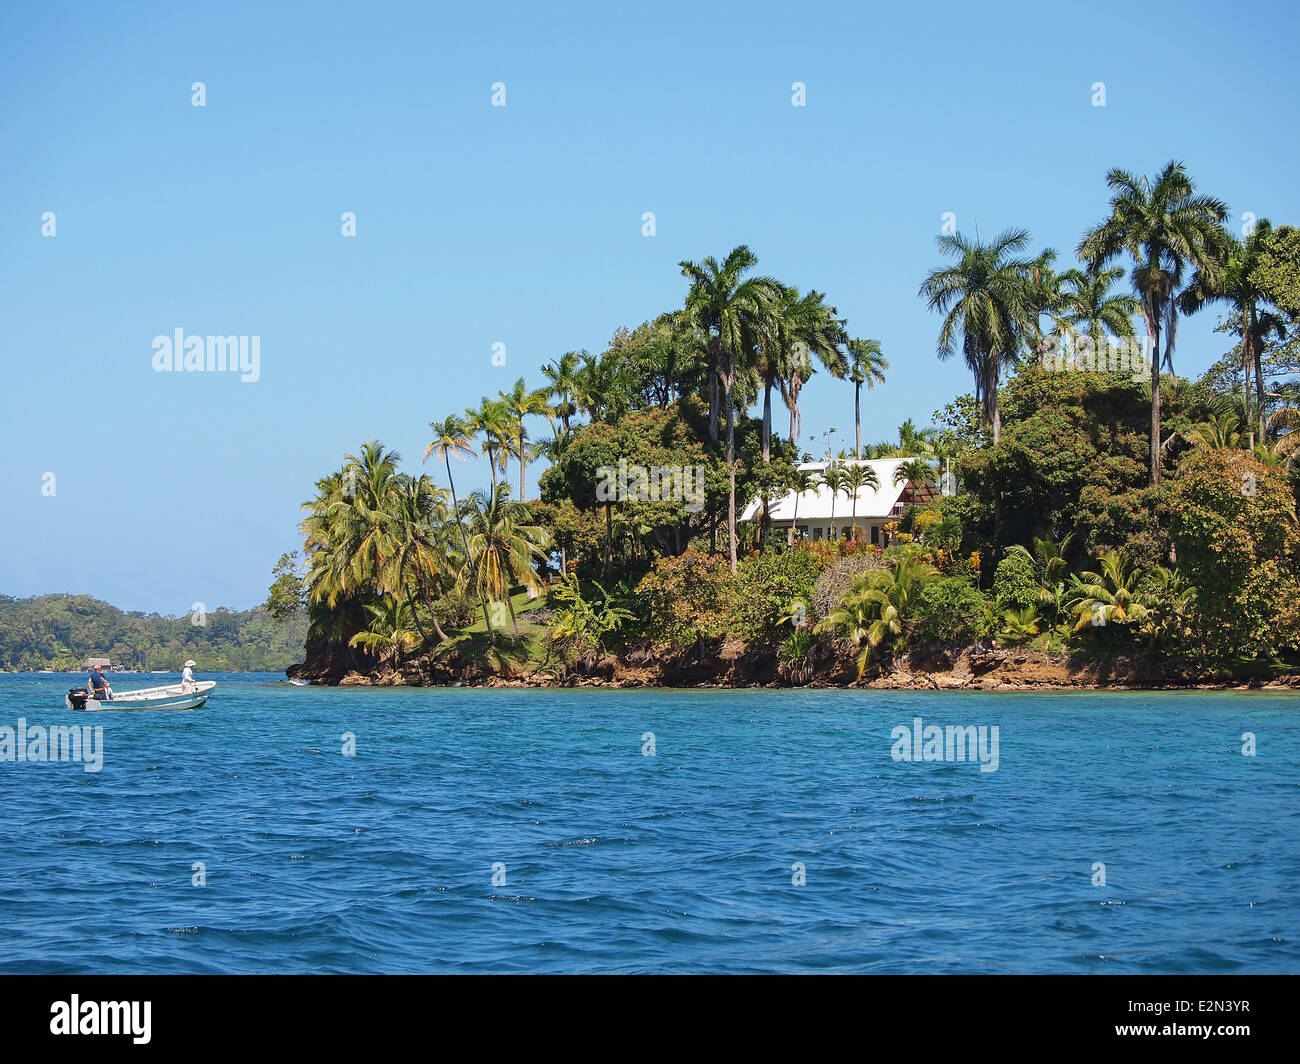 Maison avec belle végétation tropicale sur une île dans la mer des Caraïbes, Bocas del Toro, PANAMA Banque D'Images